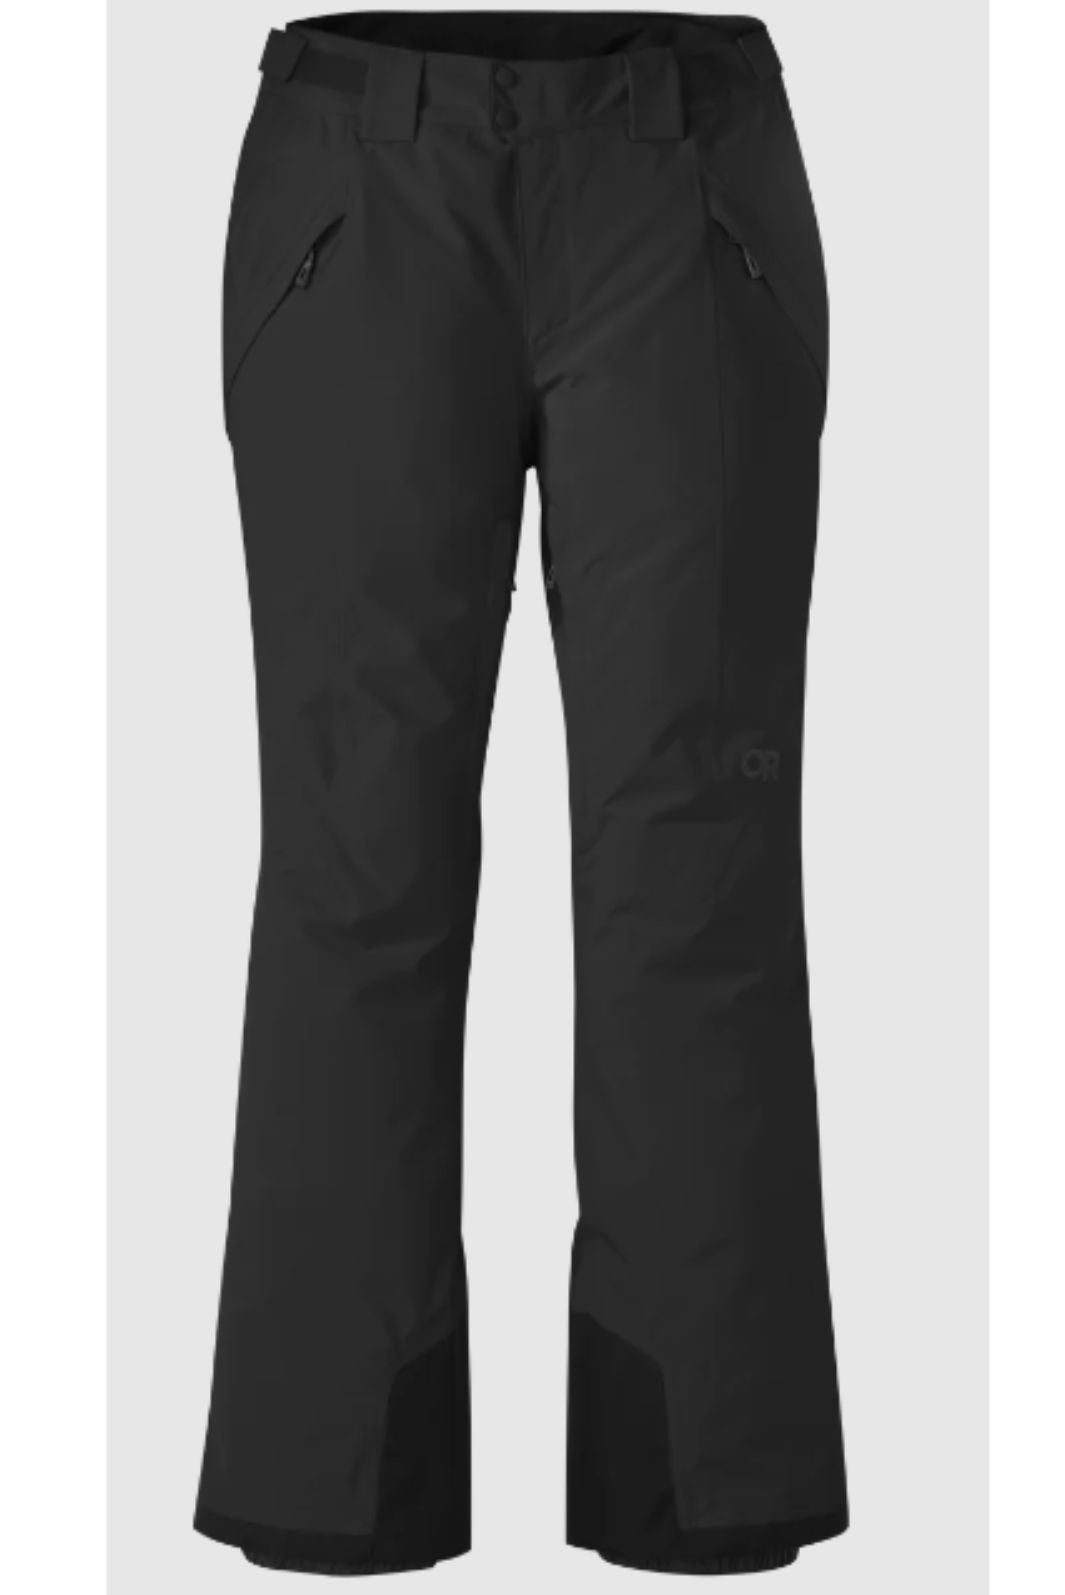 Pantalon isolé Snowcrew Taille Petite Plus (Petite) d'Outdoor Research